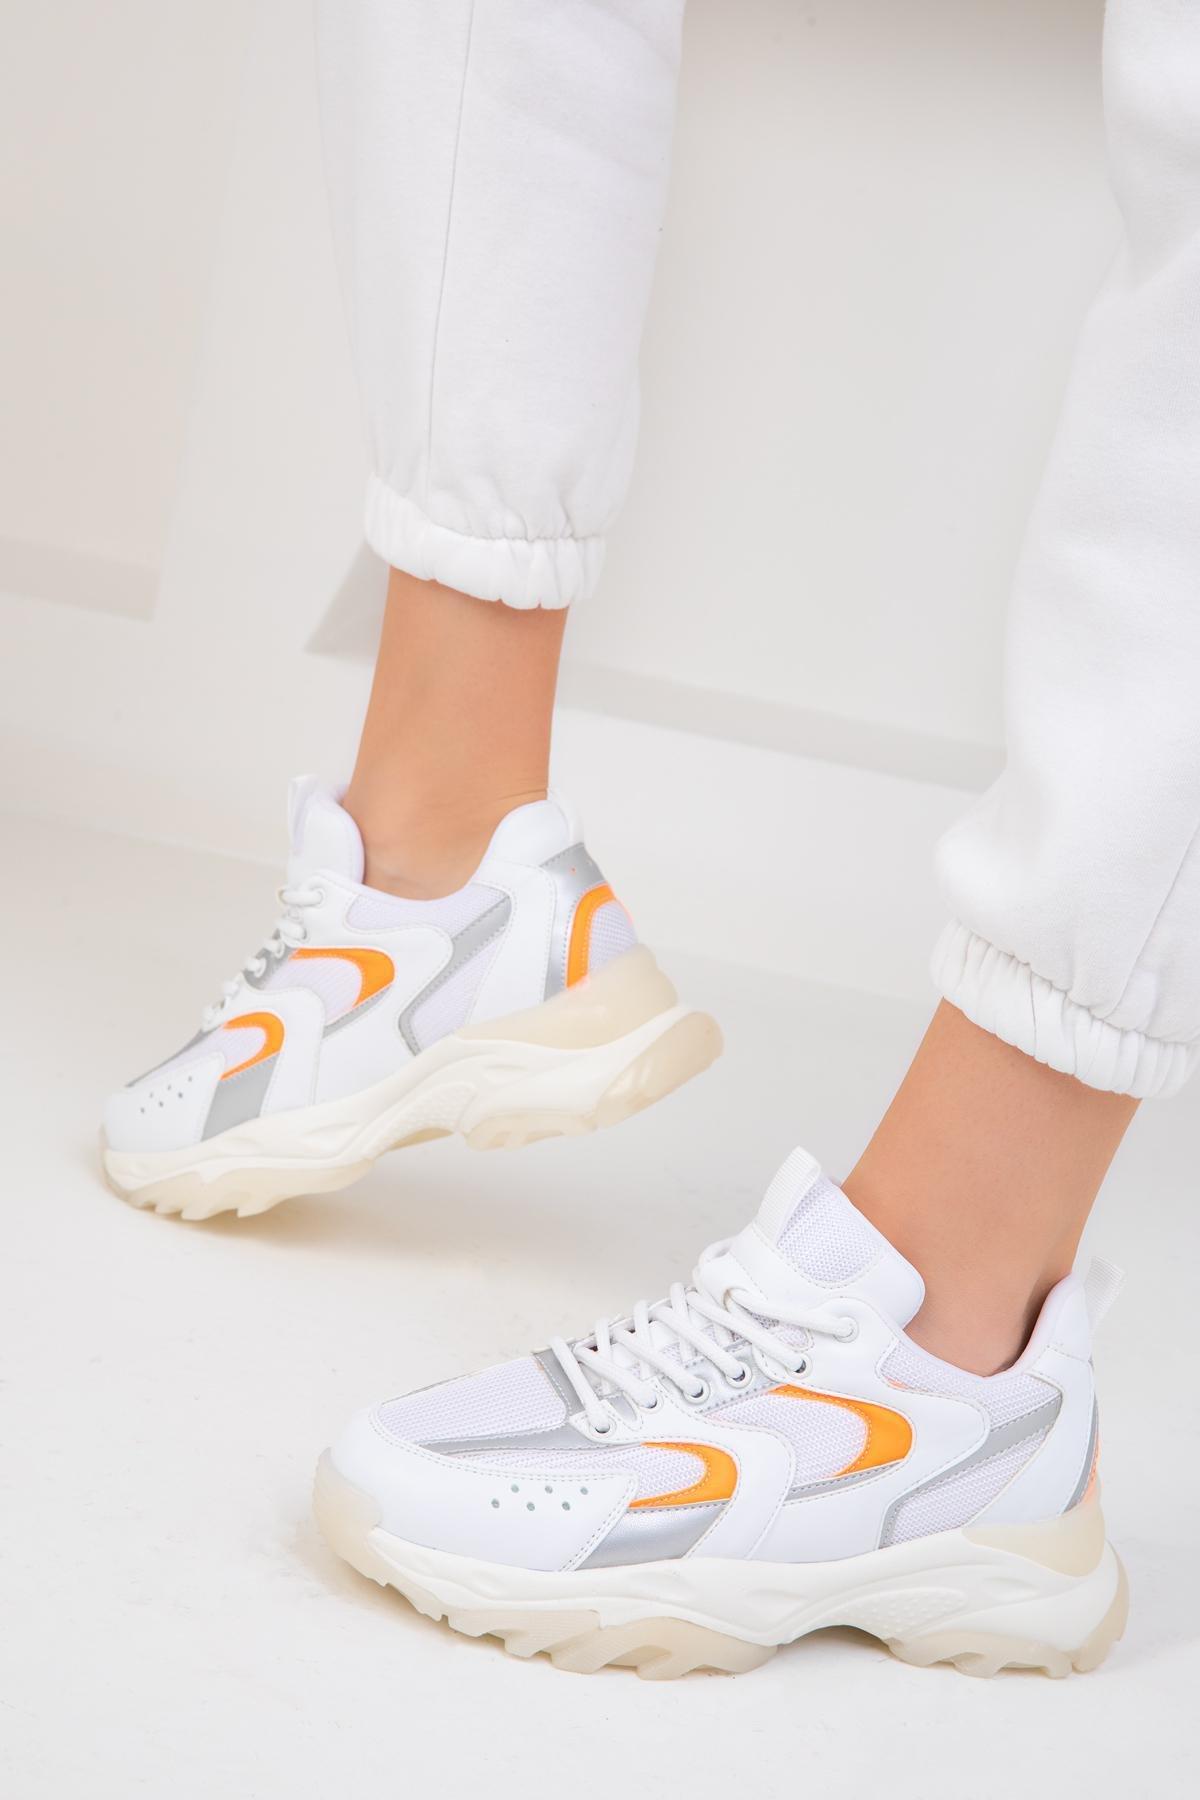 SOHO - White-Silver-Orange Womens Sneakers 18109